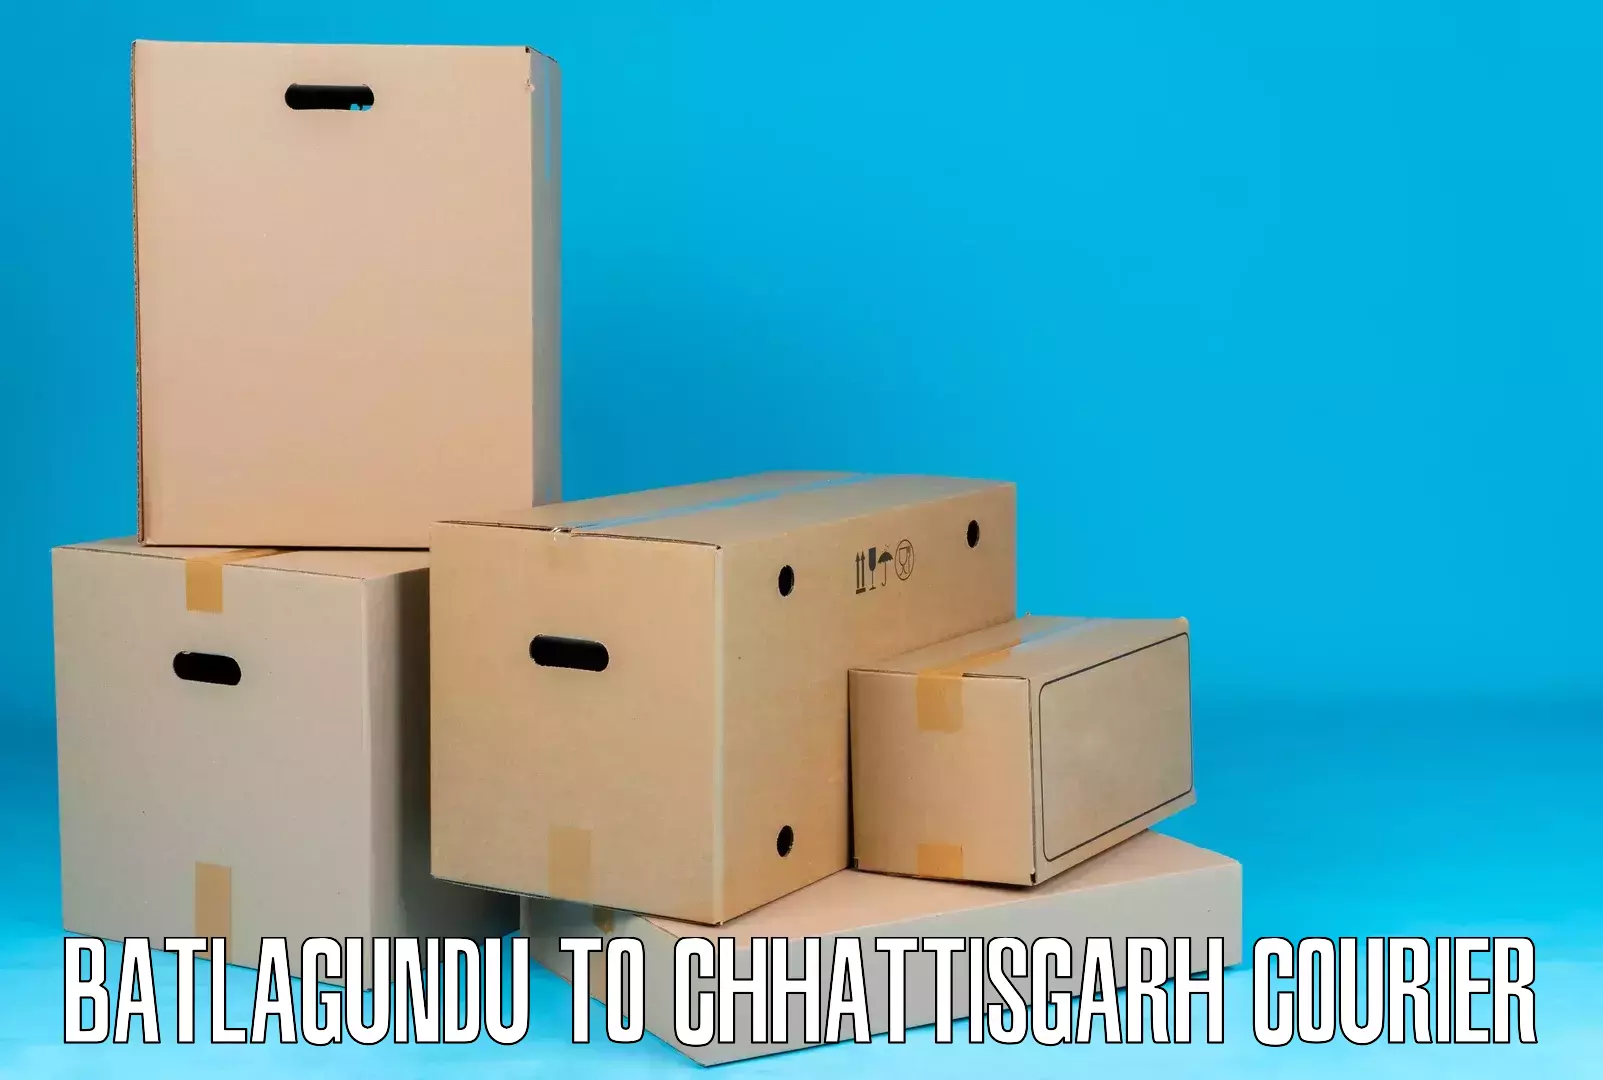 Courier services in Batlagundu to Bijapur Chhattisgarh